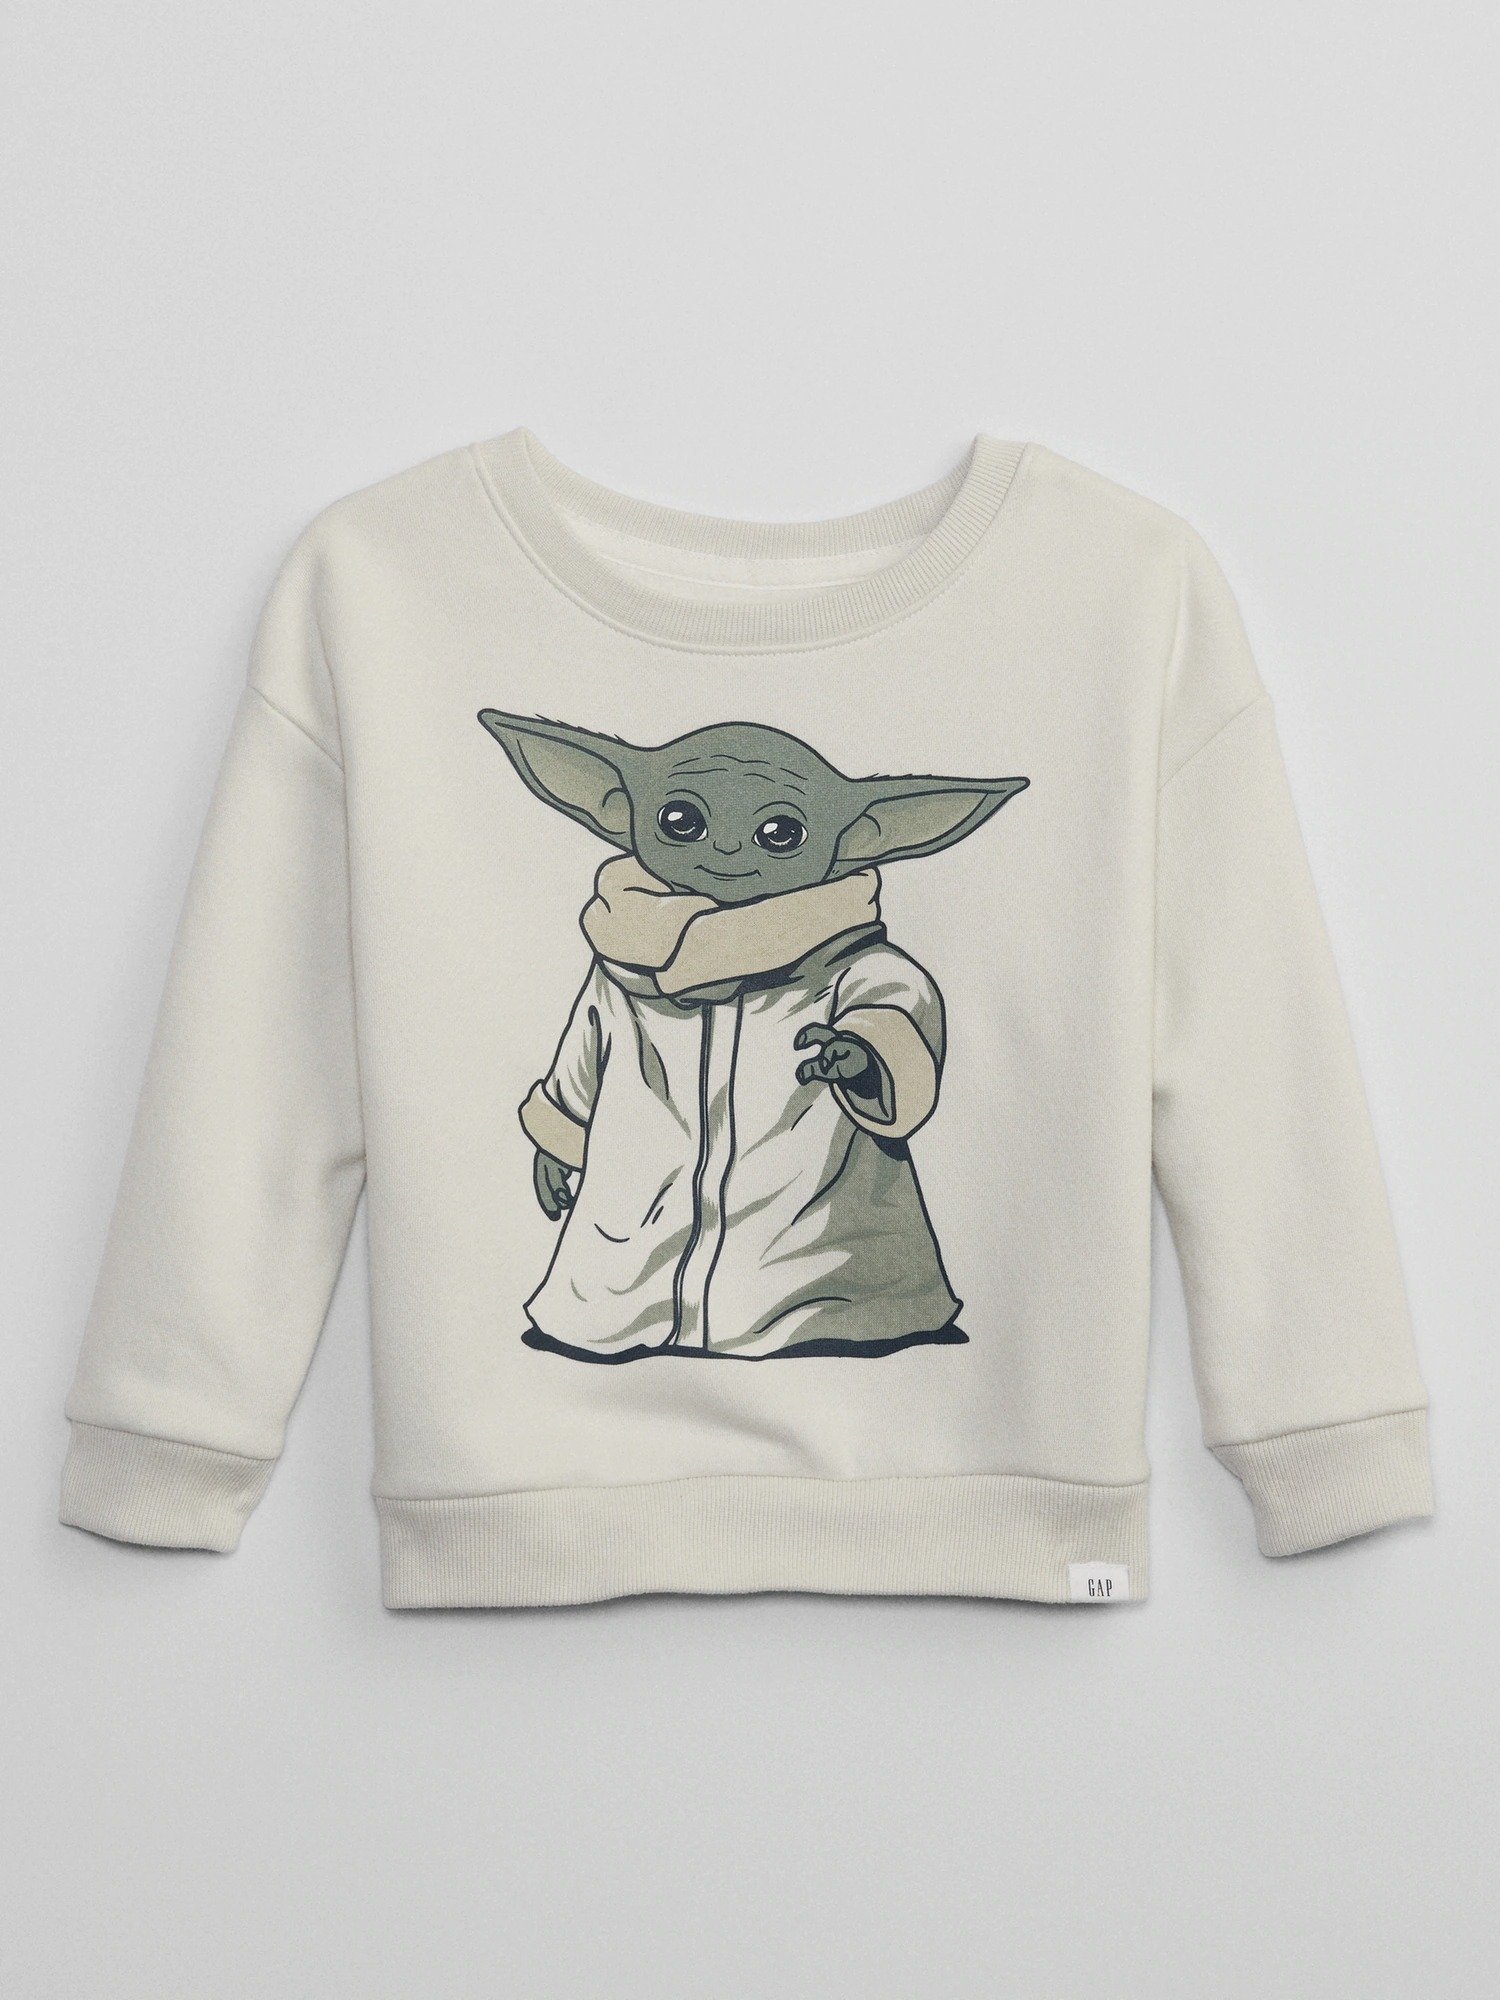 Star Wars™ Grafik Baskılı Sweatshirt product image